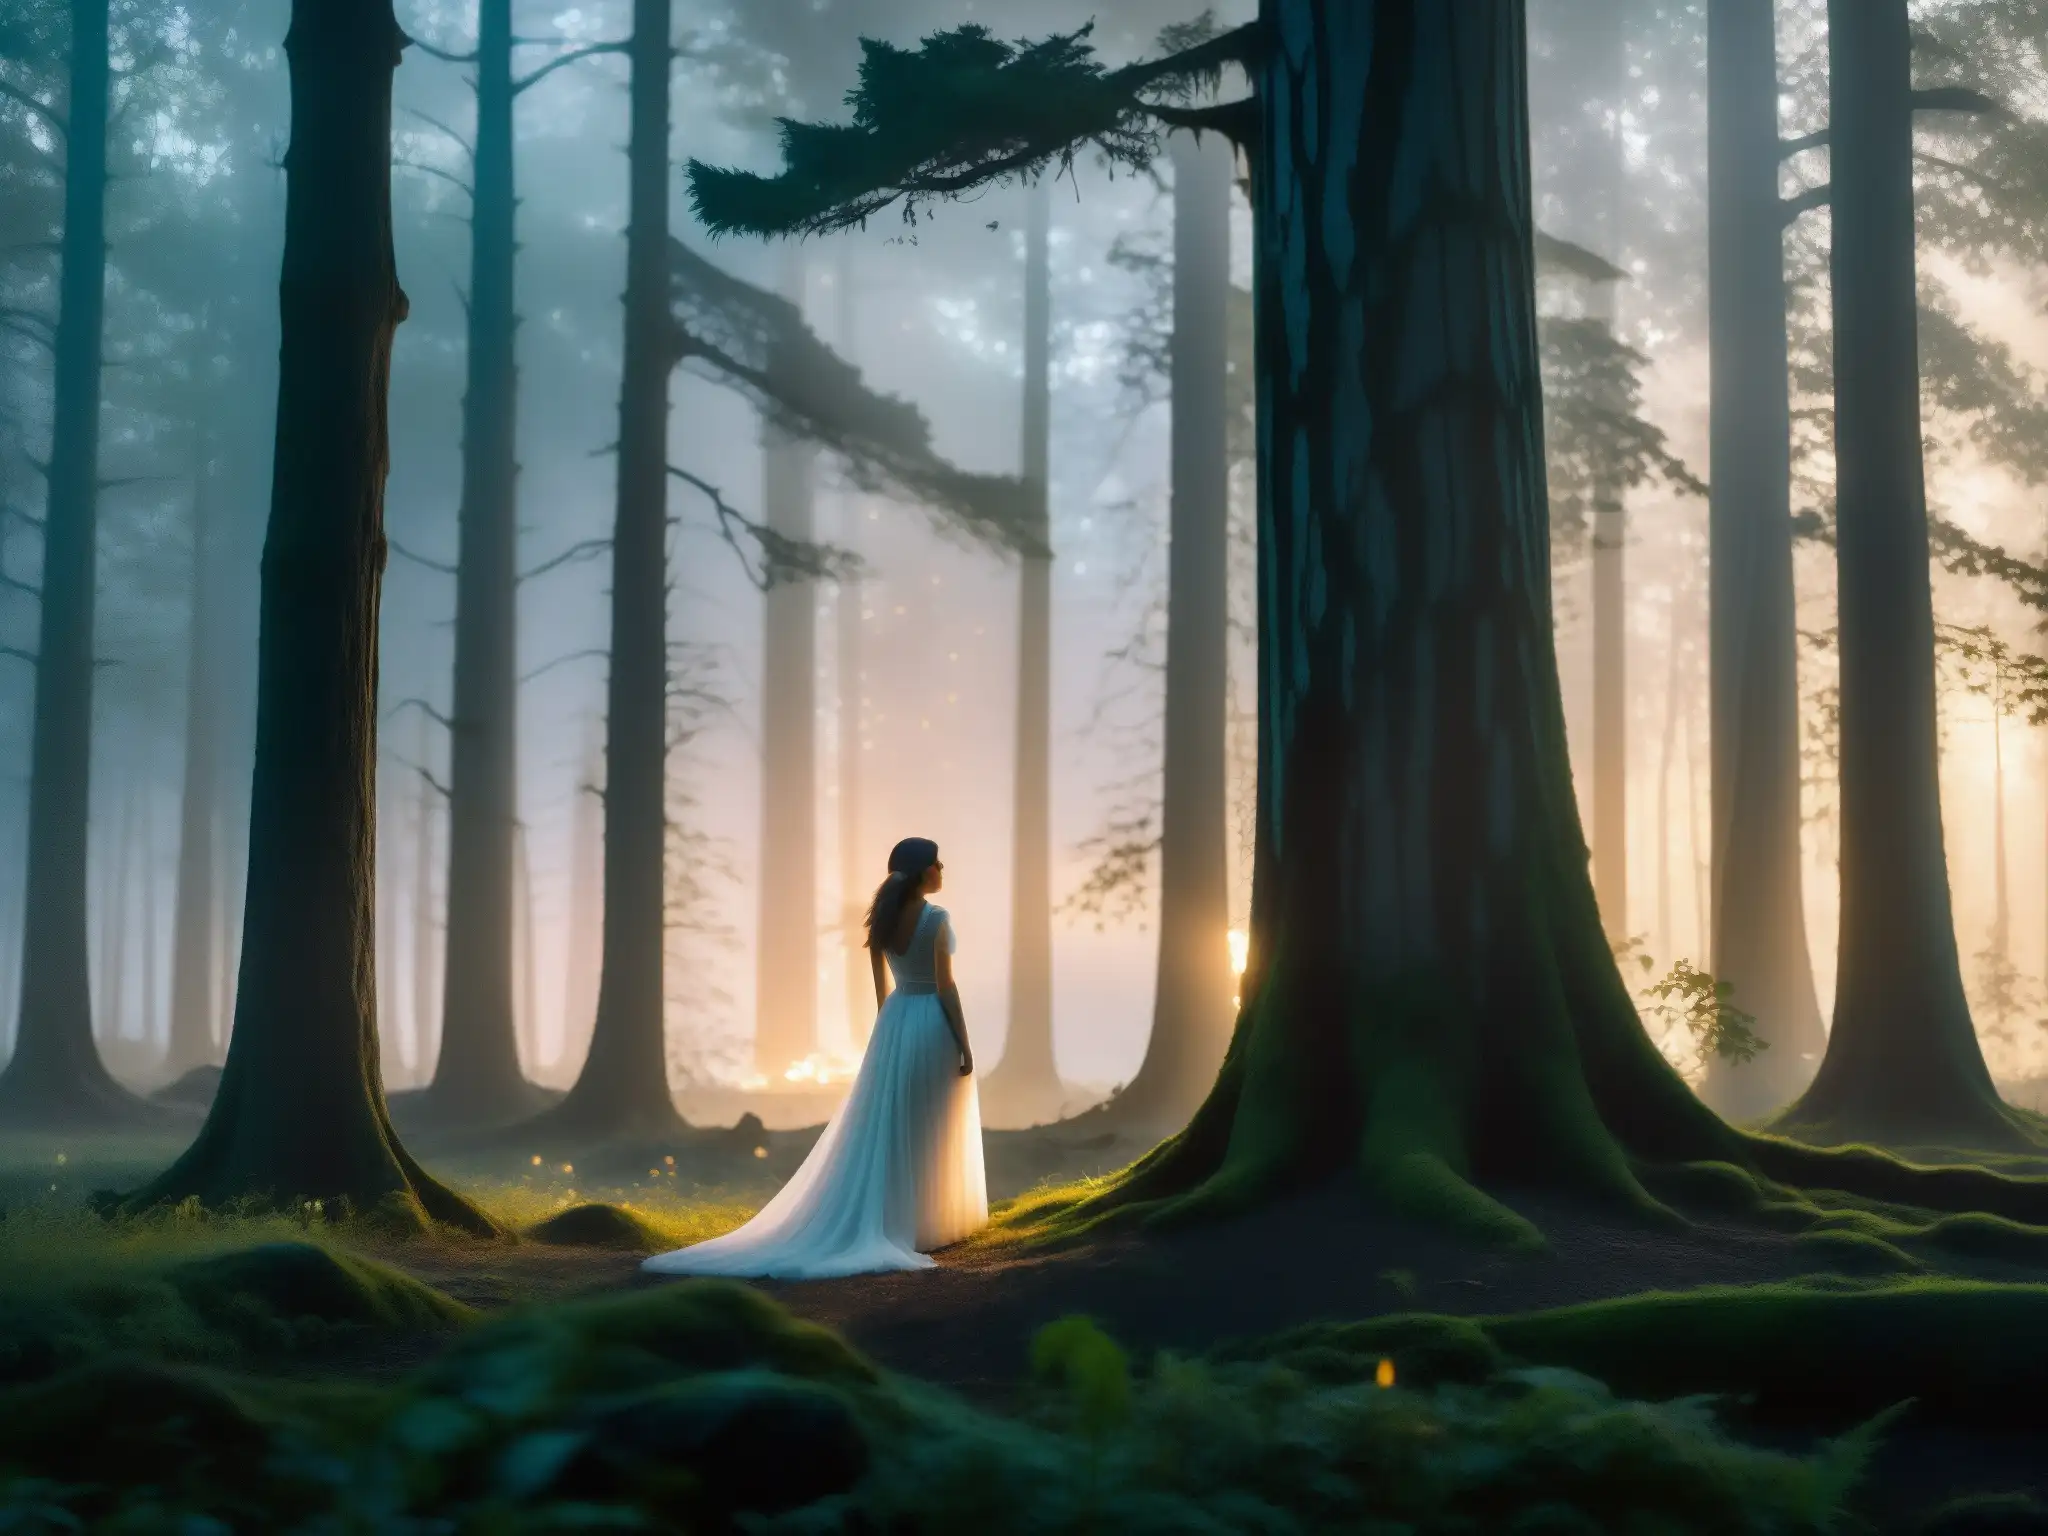 Silueta misteriosa en bosque neblinoso al atardecer, capturando la esencia de la leyenda de Mulánima: alma errante mujer